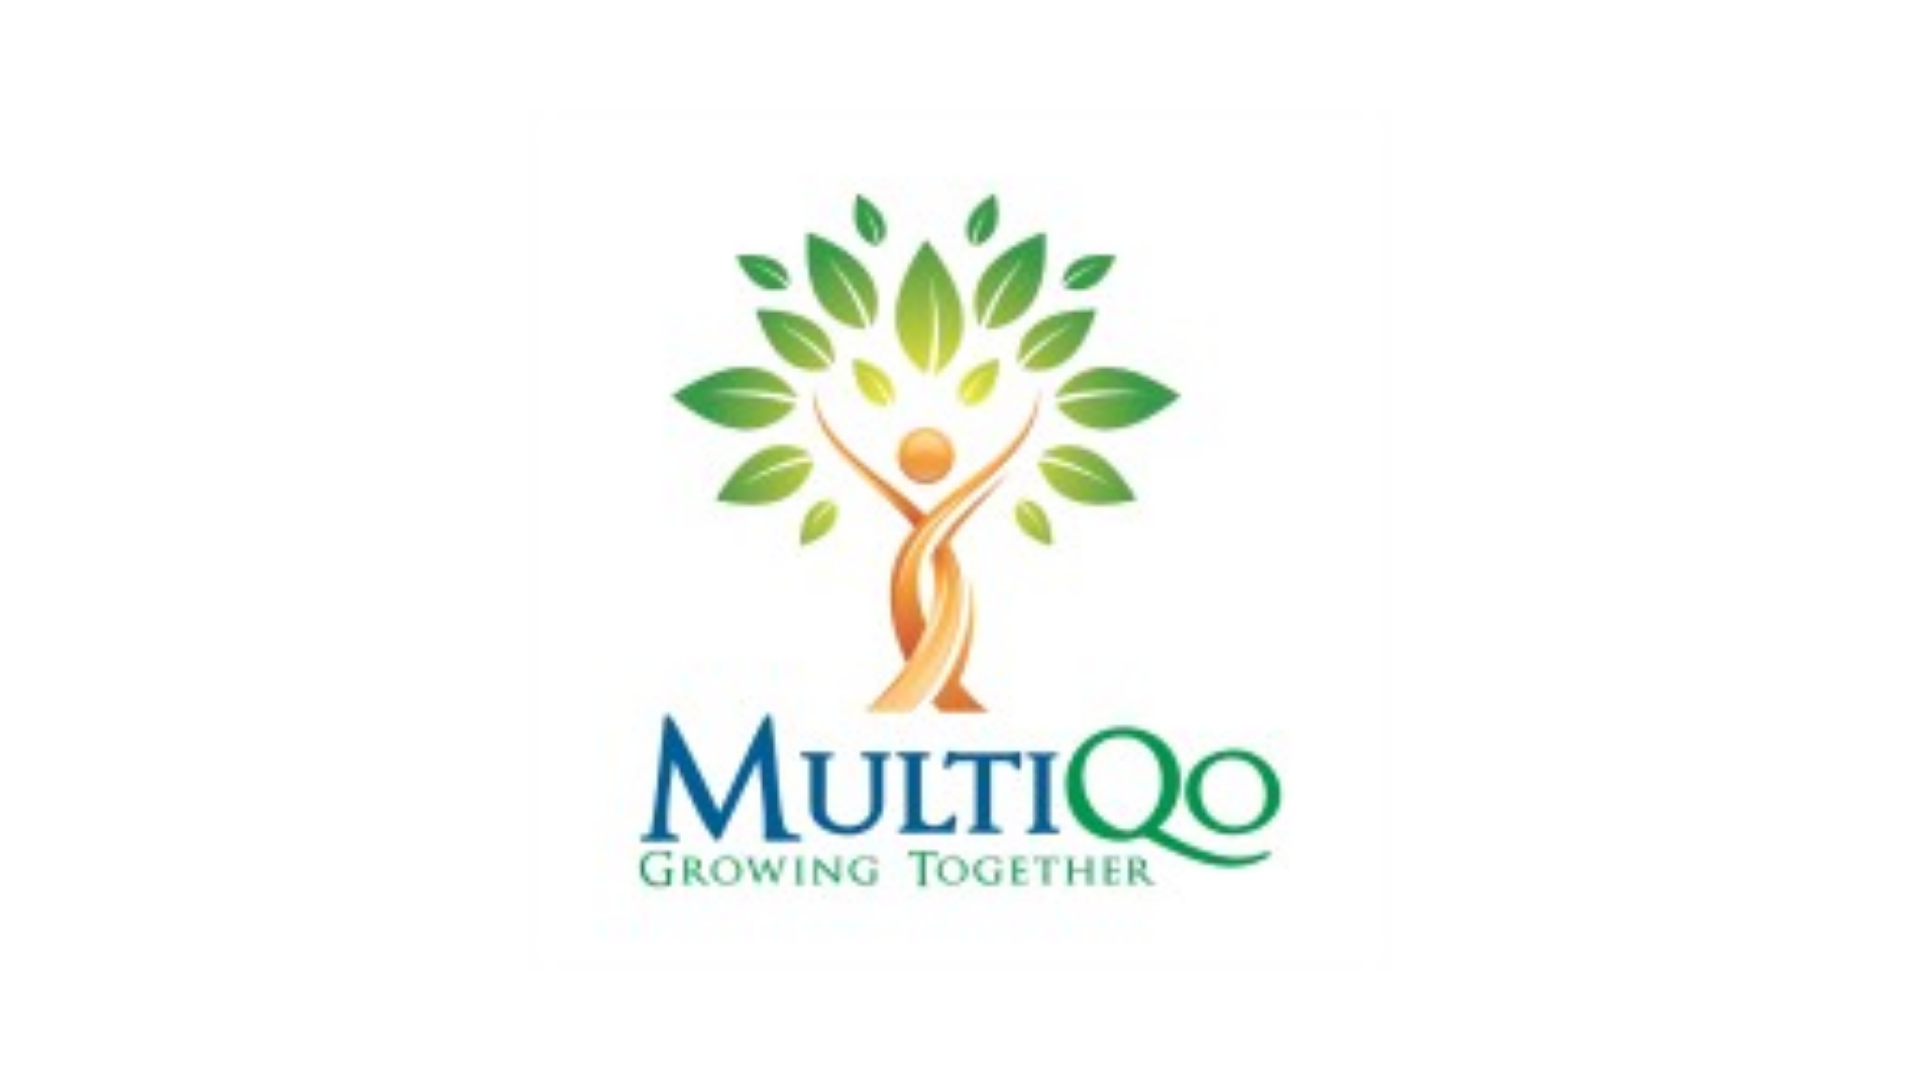 MultiQ0